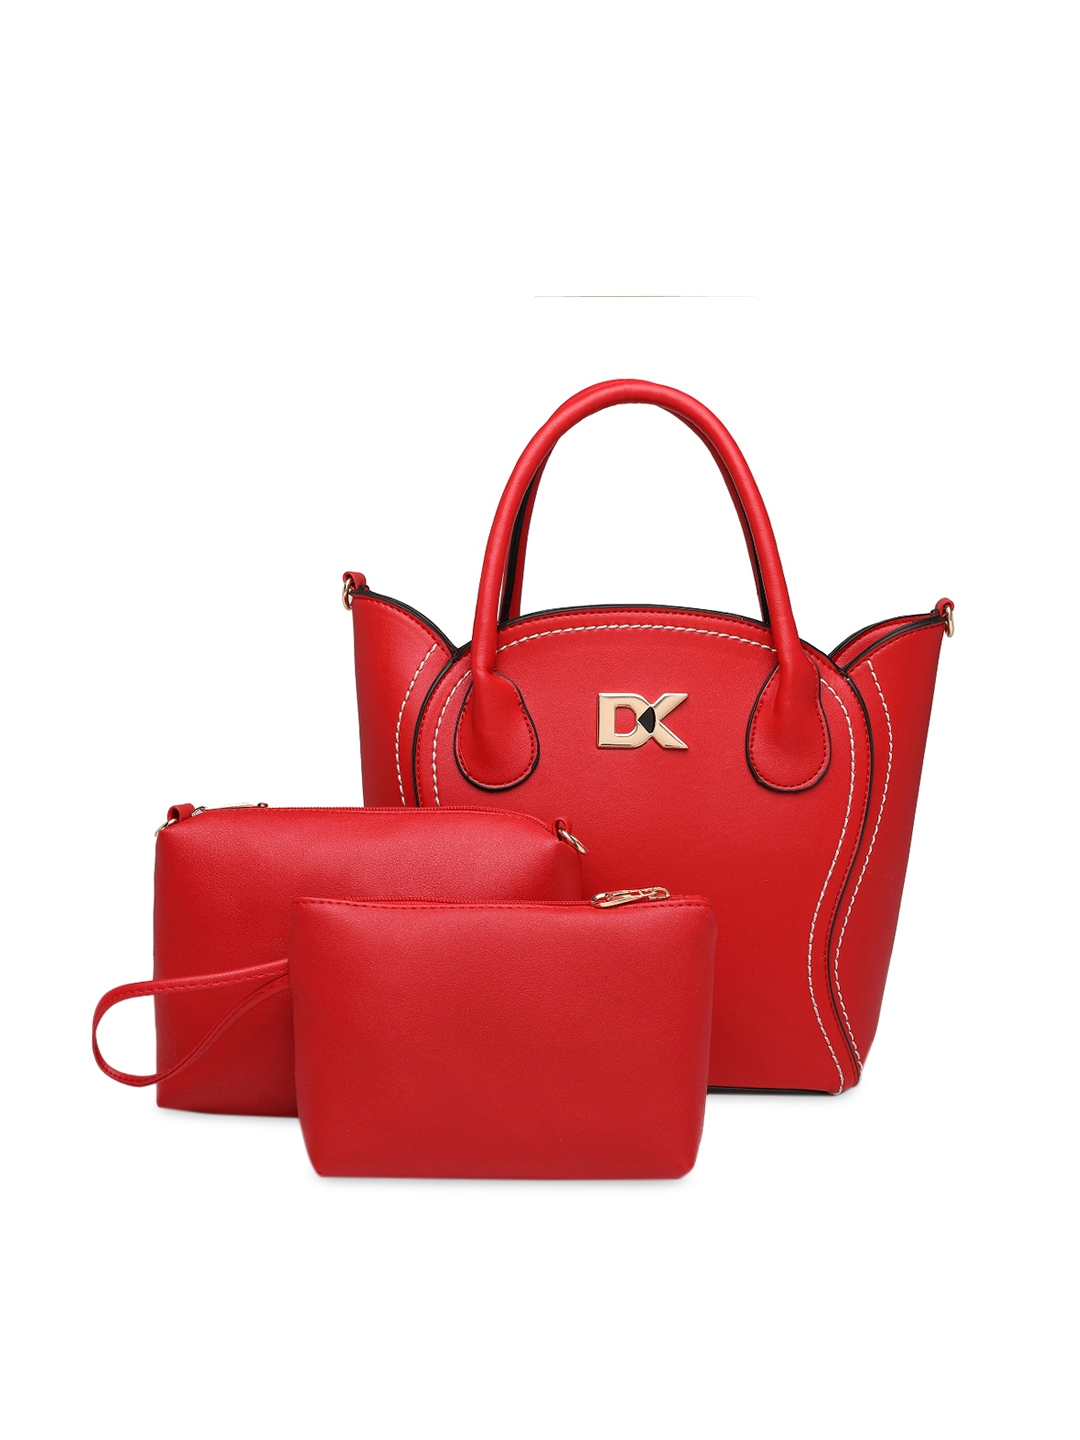 Diana Korr Red Solid Handheld Bag